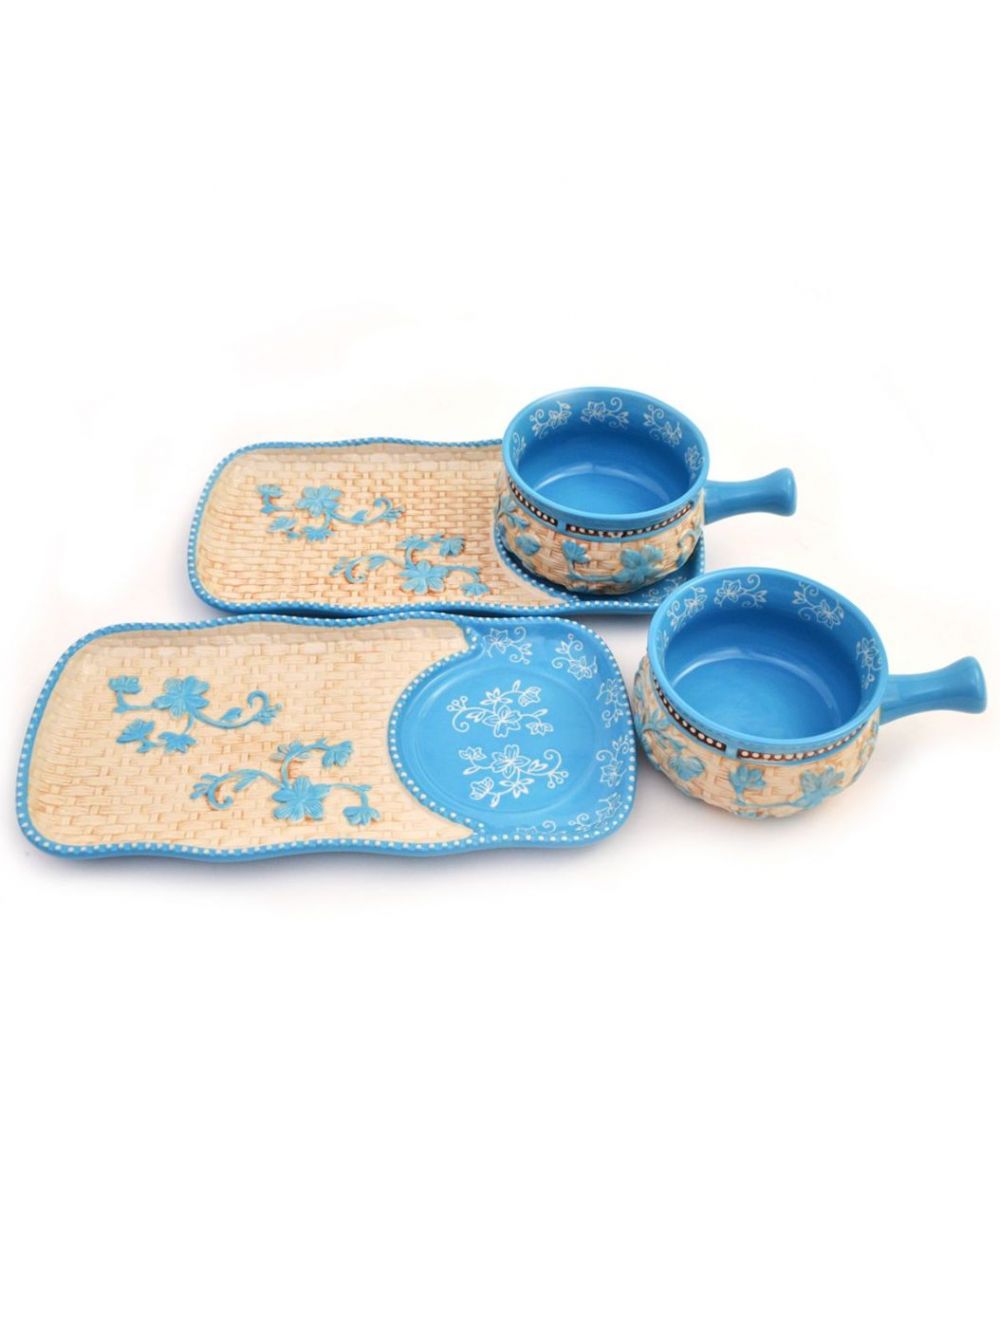 Temp-tations Floral Lace Basketweave Bowl & Appetizer Plate Set - 4 Piece-T48493-light blue